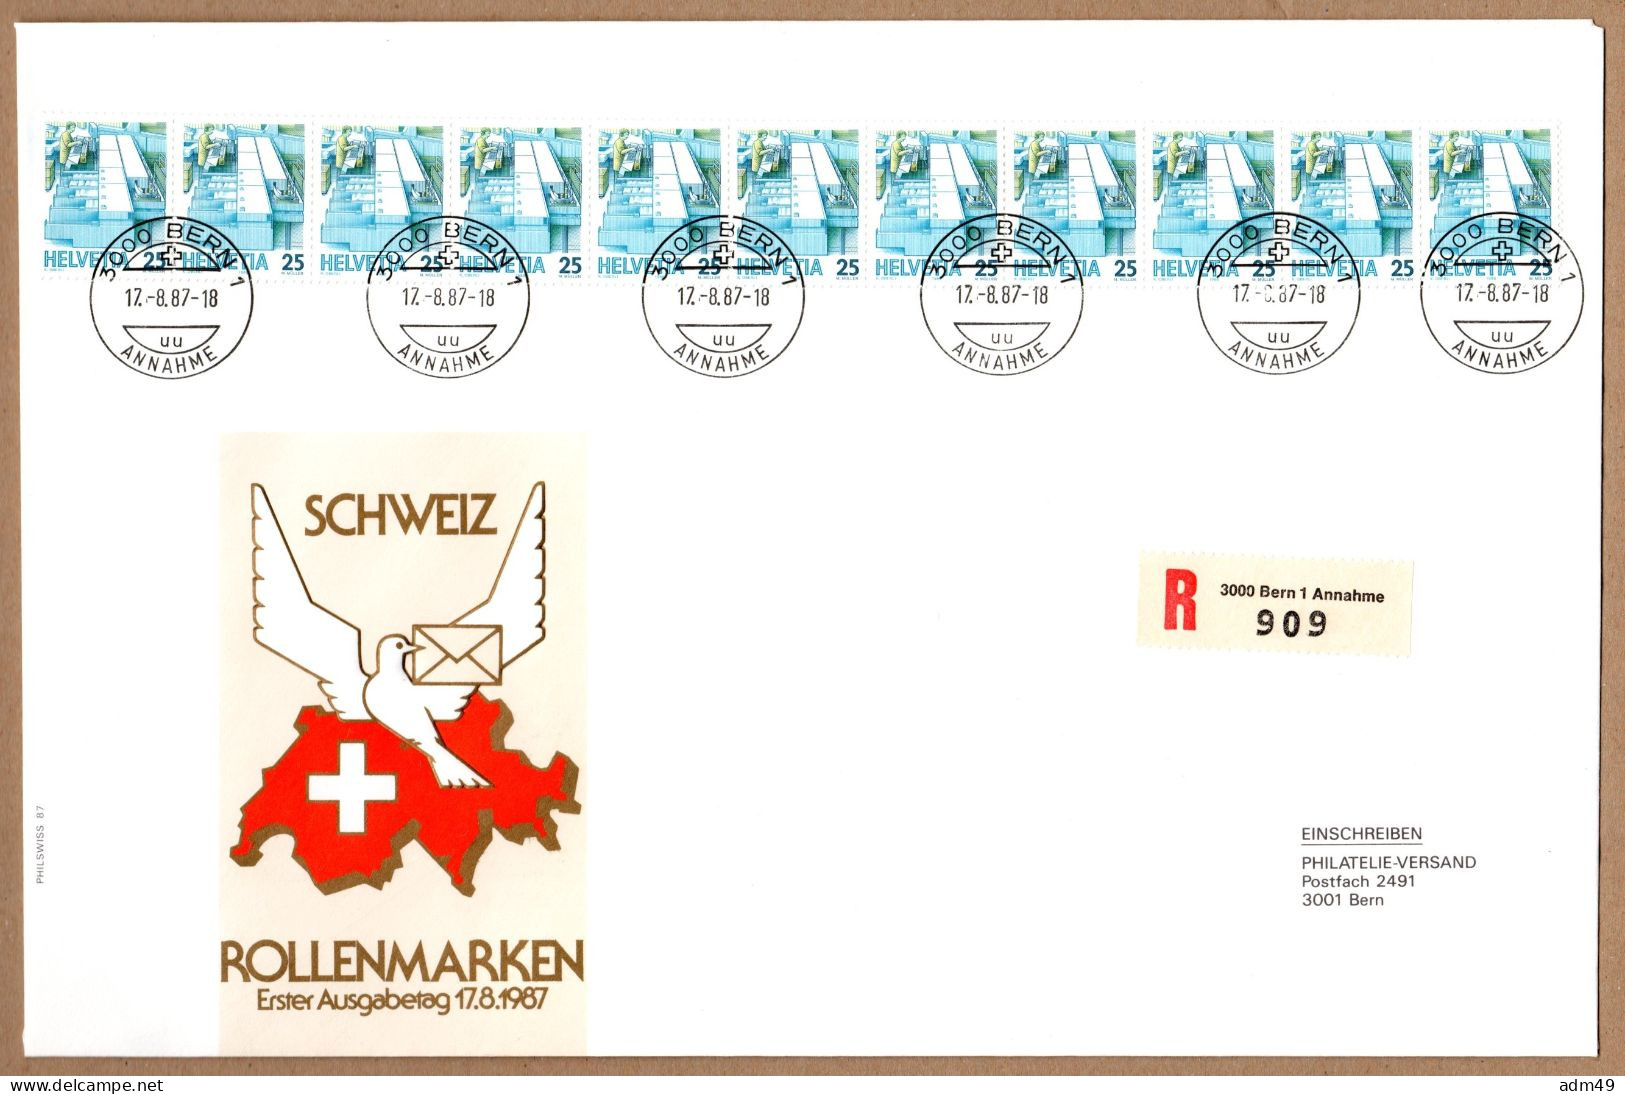 SCHWEIZ, 1987 Rollenmarken-FDC - Coil Stamps